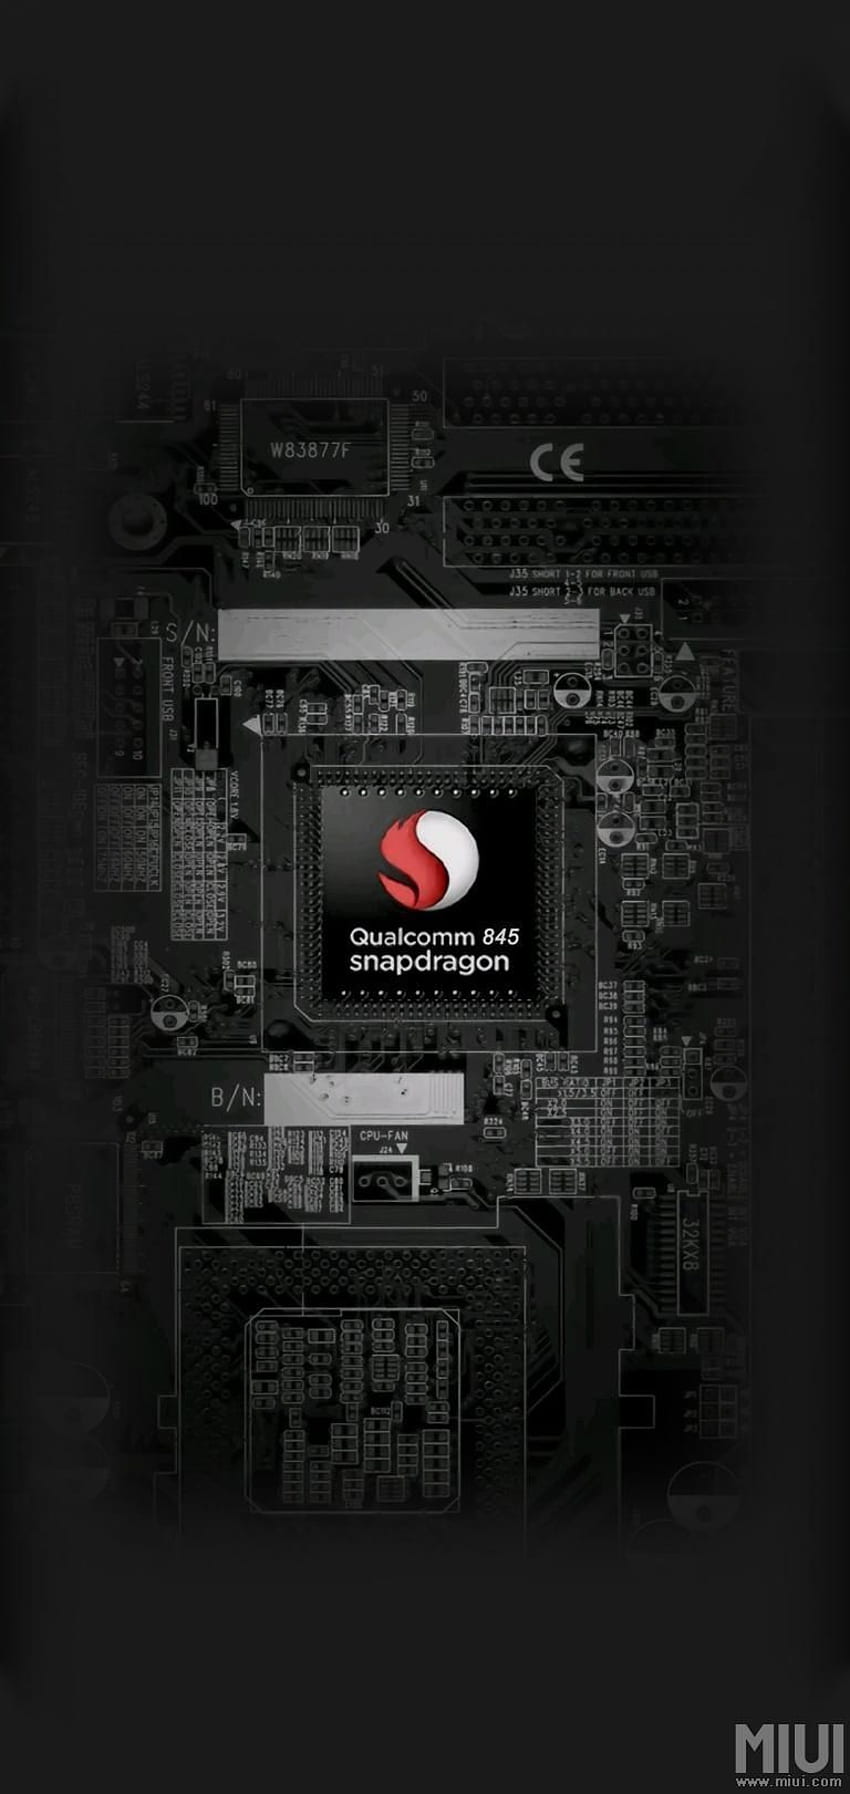 Tablero principal transparente Xiaolong 845, procesador Snapdragon fondo de pantalla del teléfono